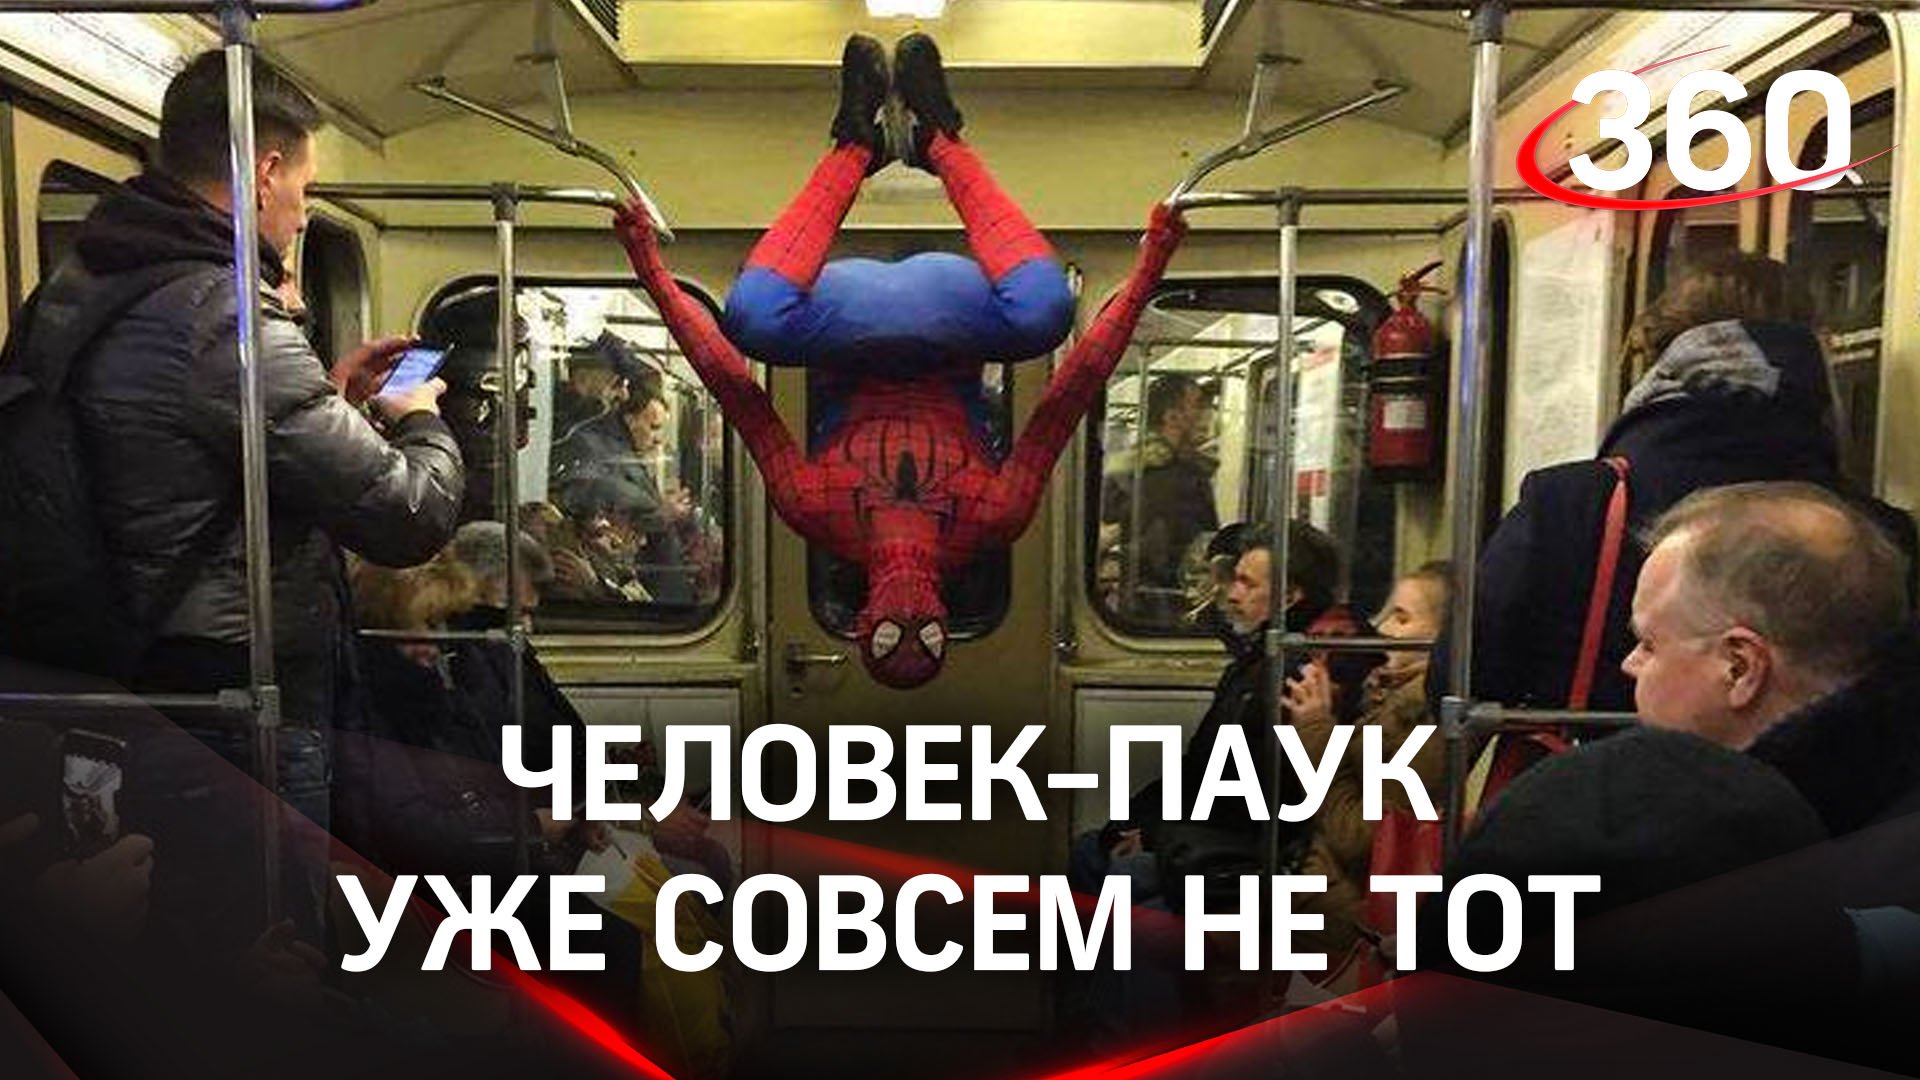 Человек-паук зарабатывает мелочь в метро, болтаясь на поручнях